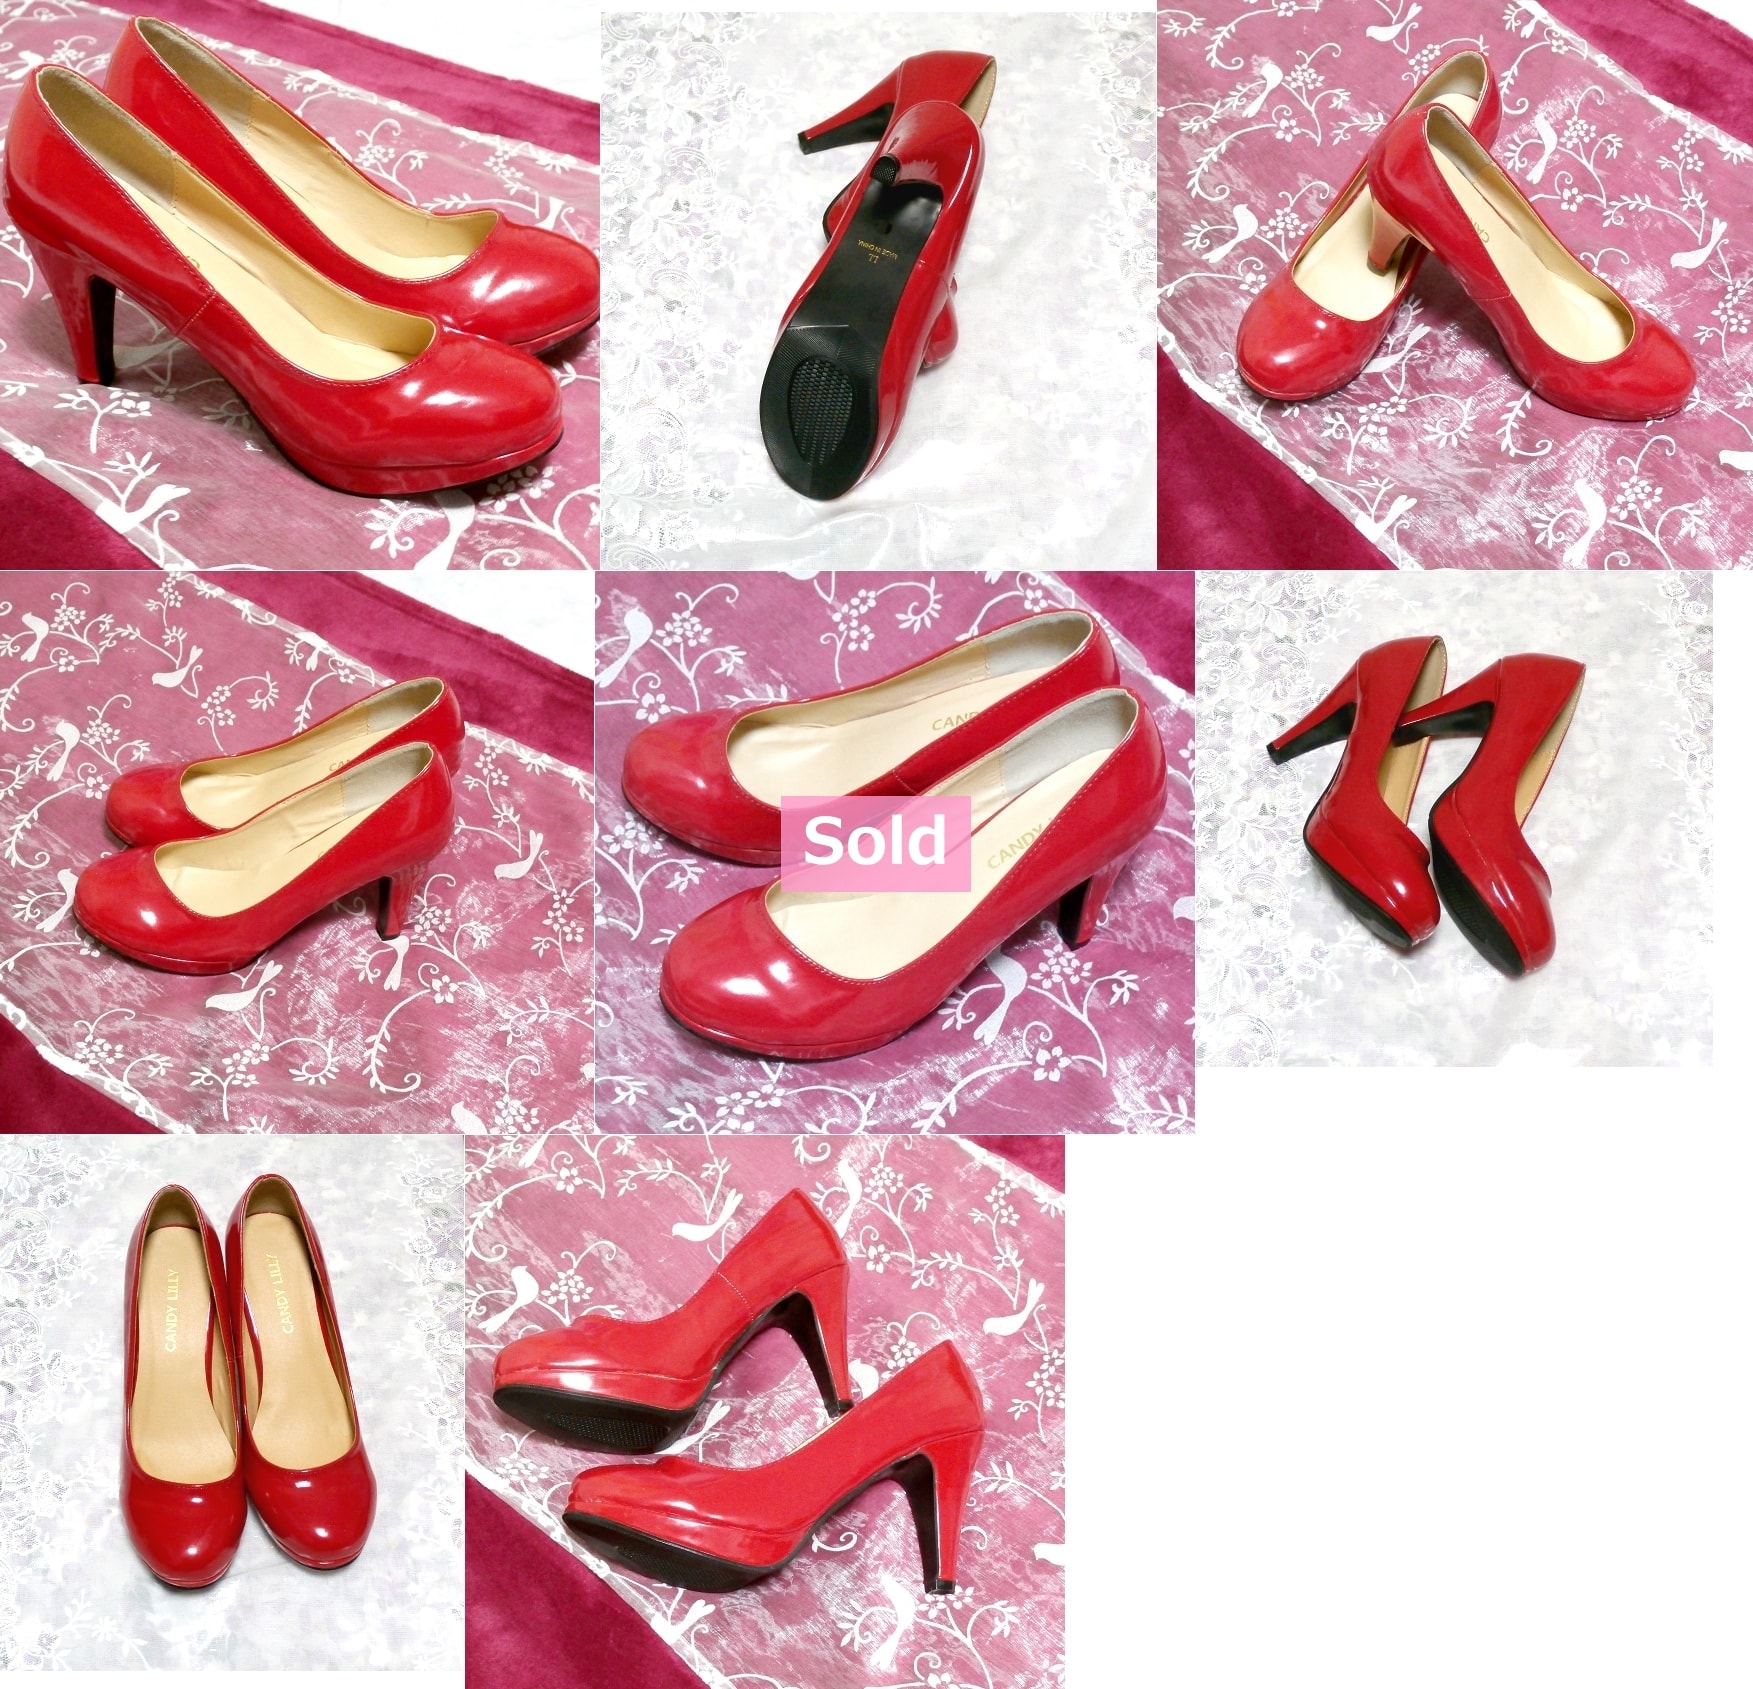 एड़ी 3.93 लाल लाल सेक्सी सेक्सी ऊँची एड़ी के जूते, पंप और 24.0 सेमी और लाल रंग में